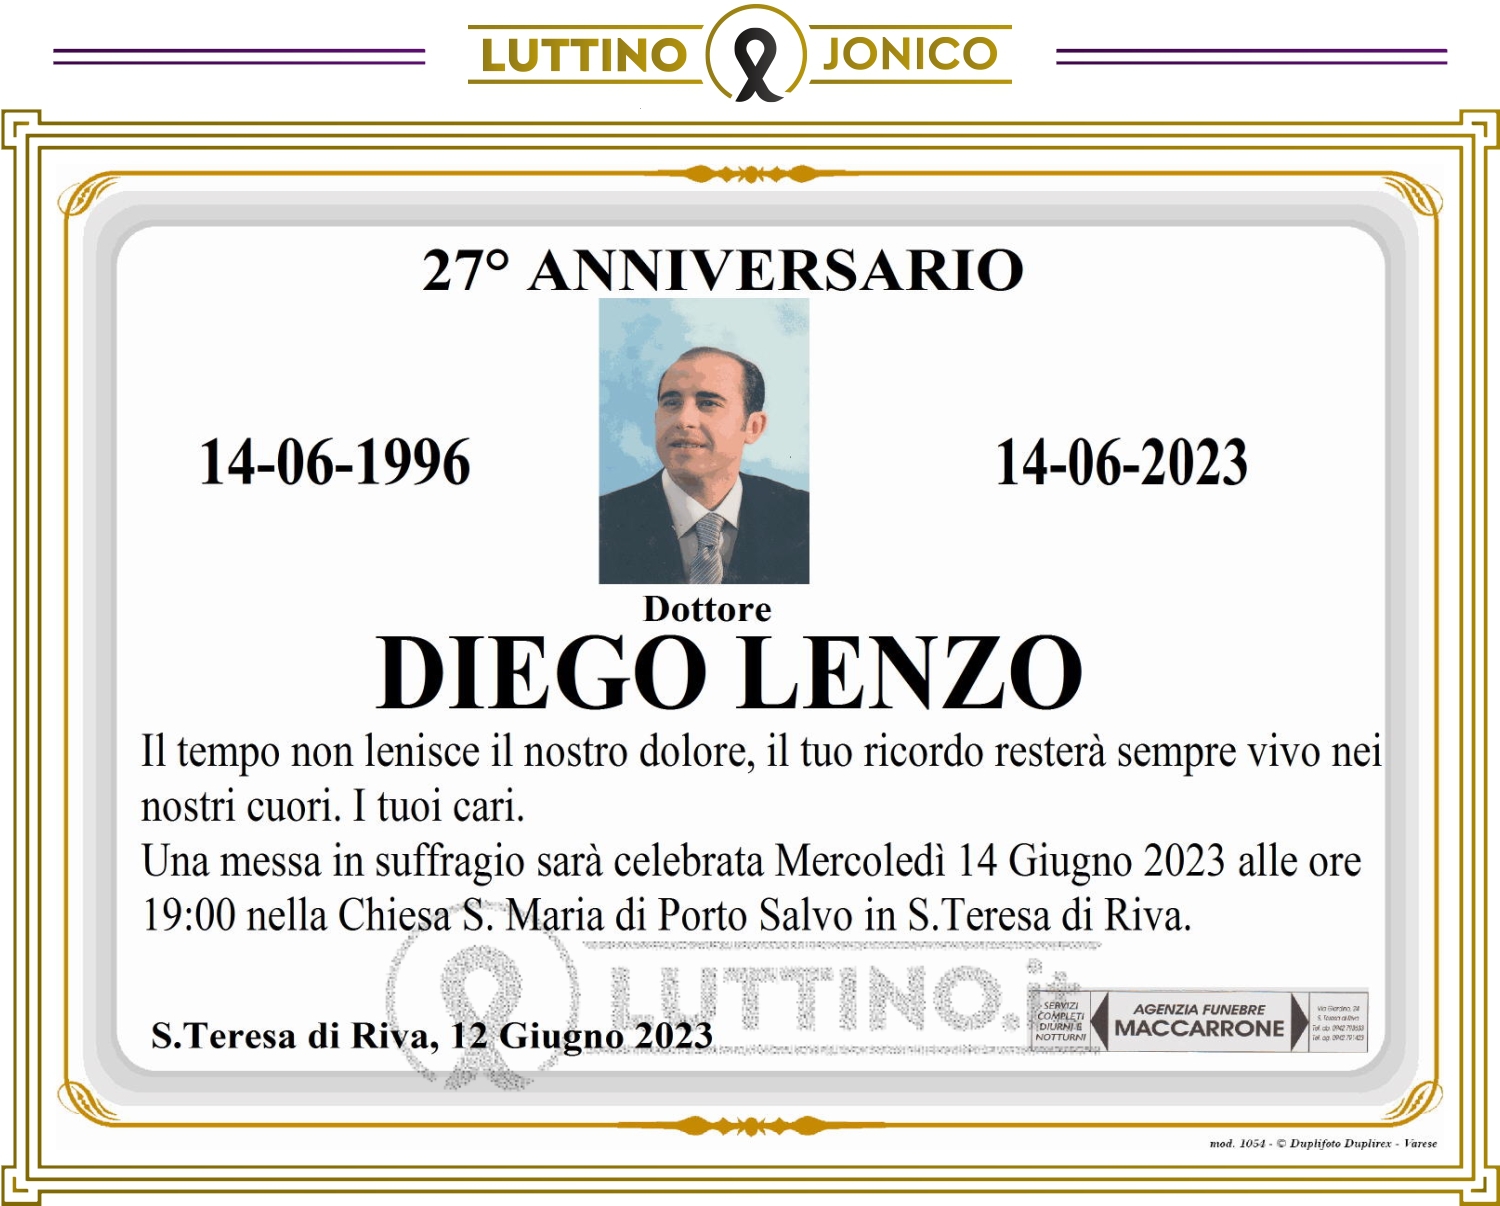 Diego Lenzo